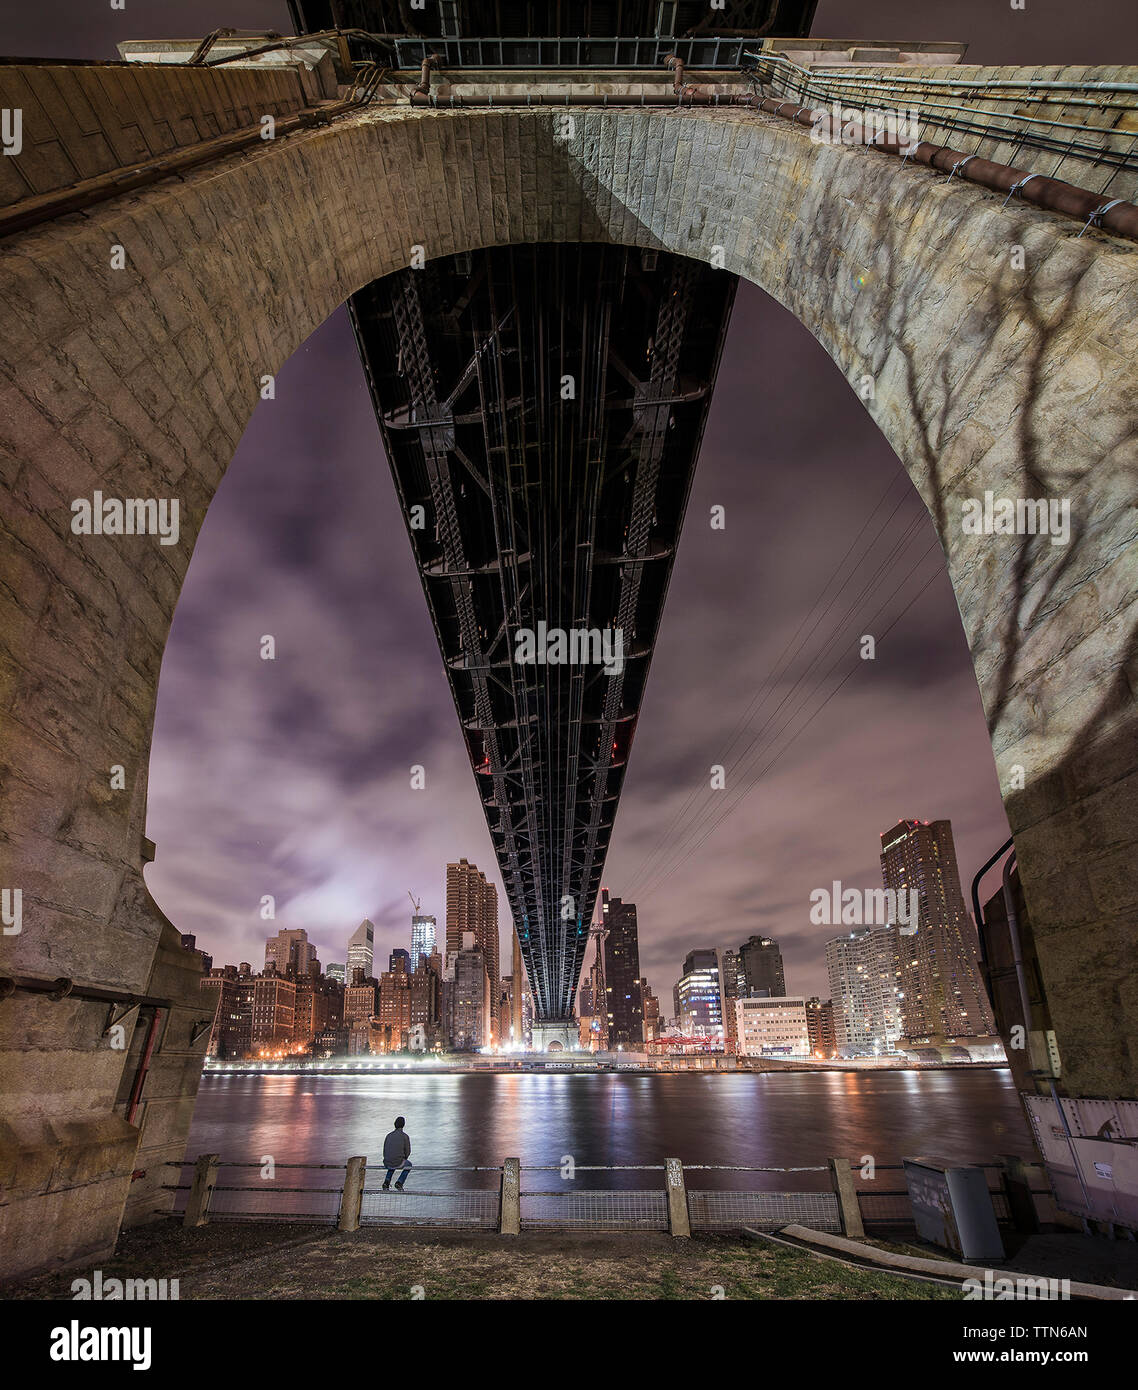 Uomo seduto sulla ringhiera sotto il ponte sul fiume e la città illuminata al crepuscolo Foto Stock